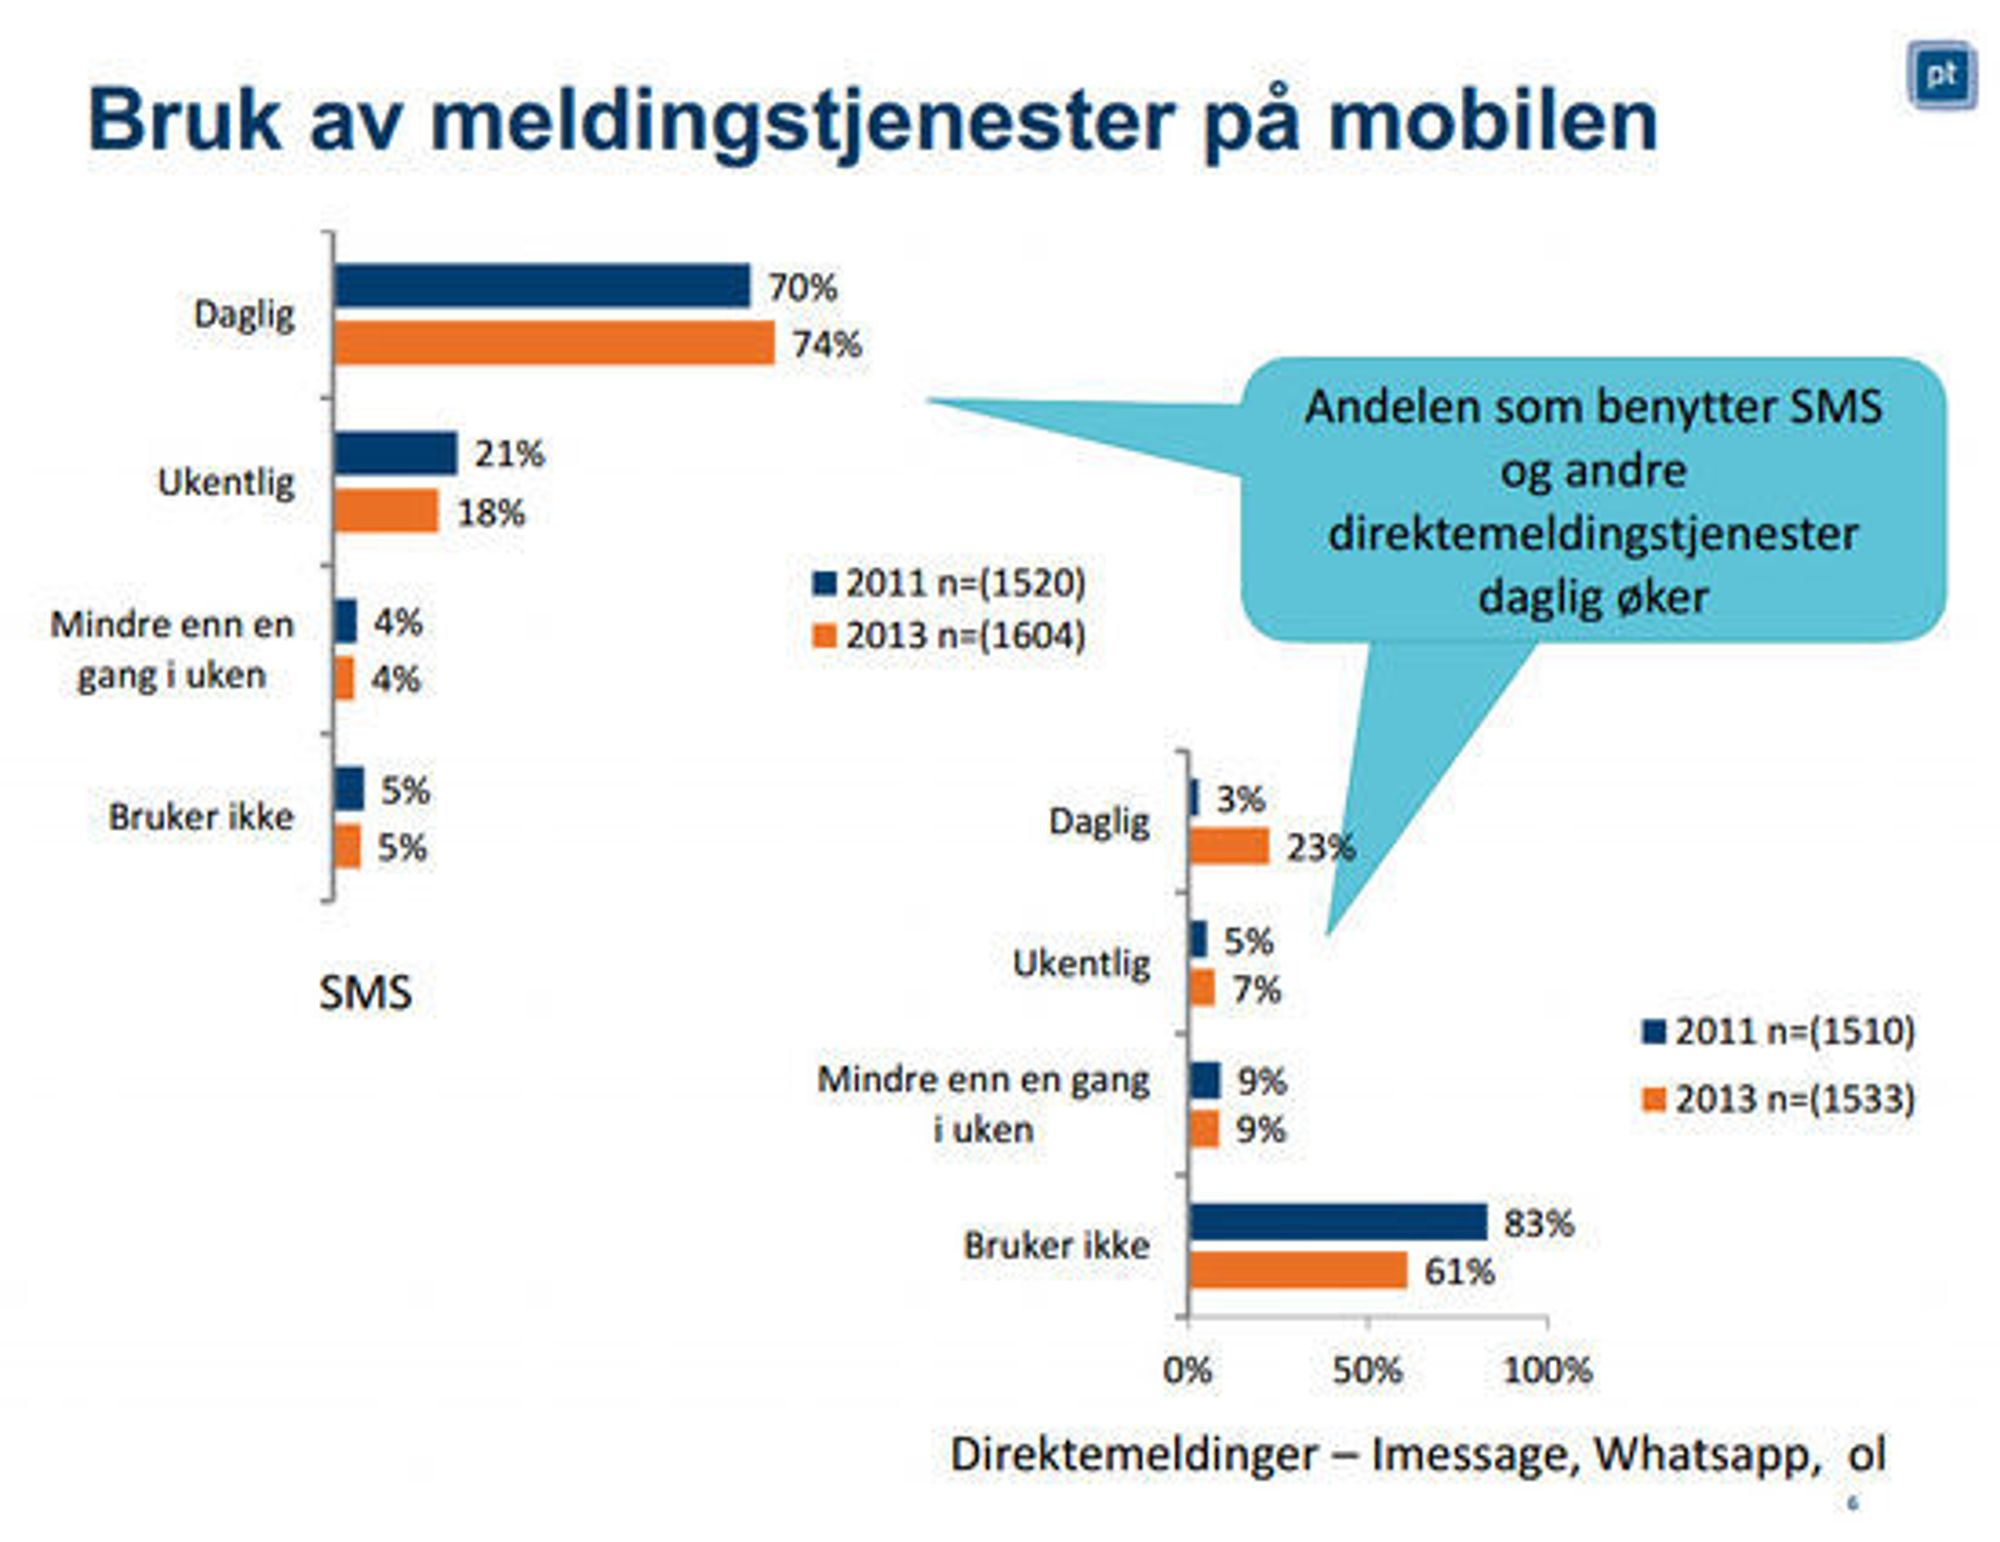 Bruk av meldingstjenester på mobilen i Norge 2013.